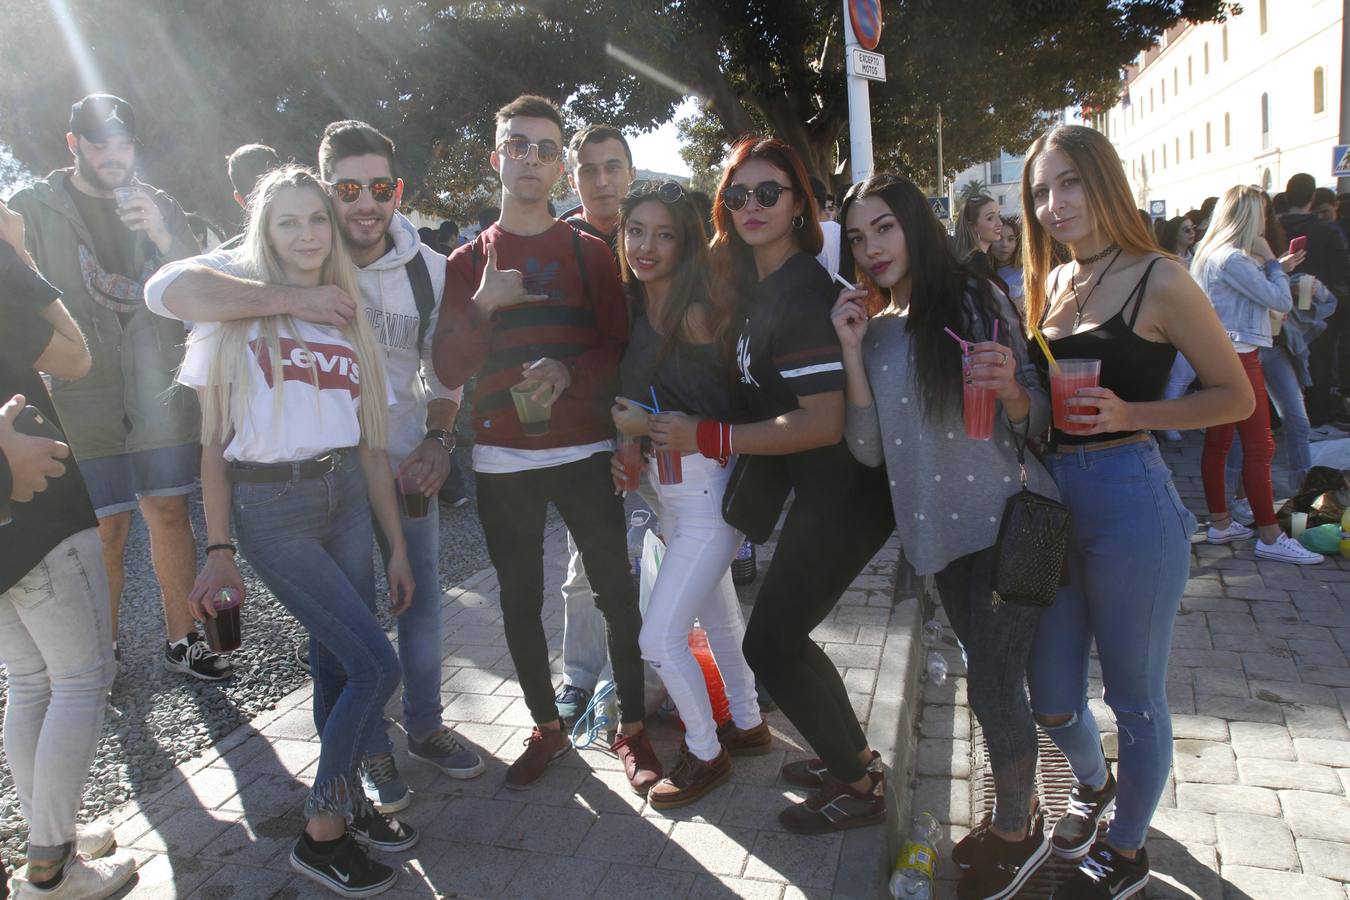 Una convivencia en el campus de la Muralla del Mar reúne, a mediodía, a miles de estudiantes